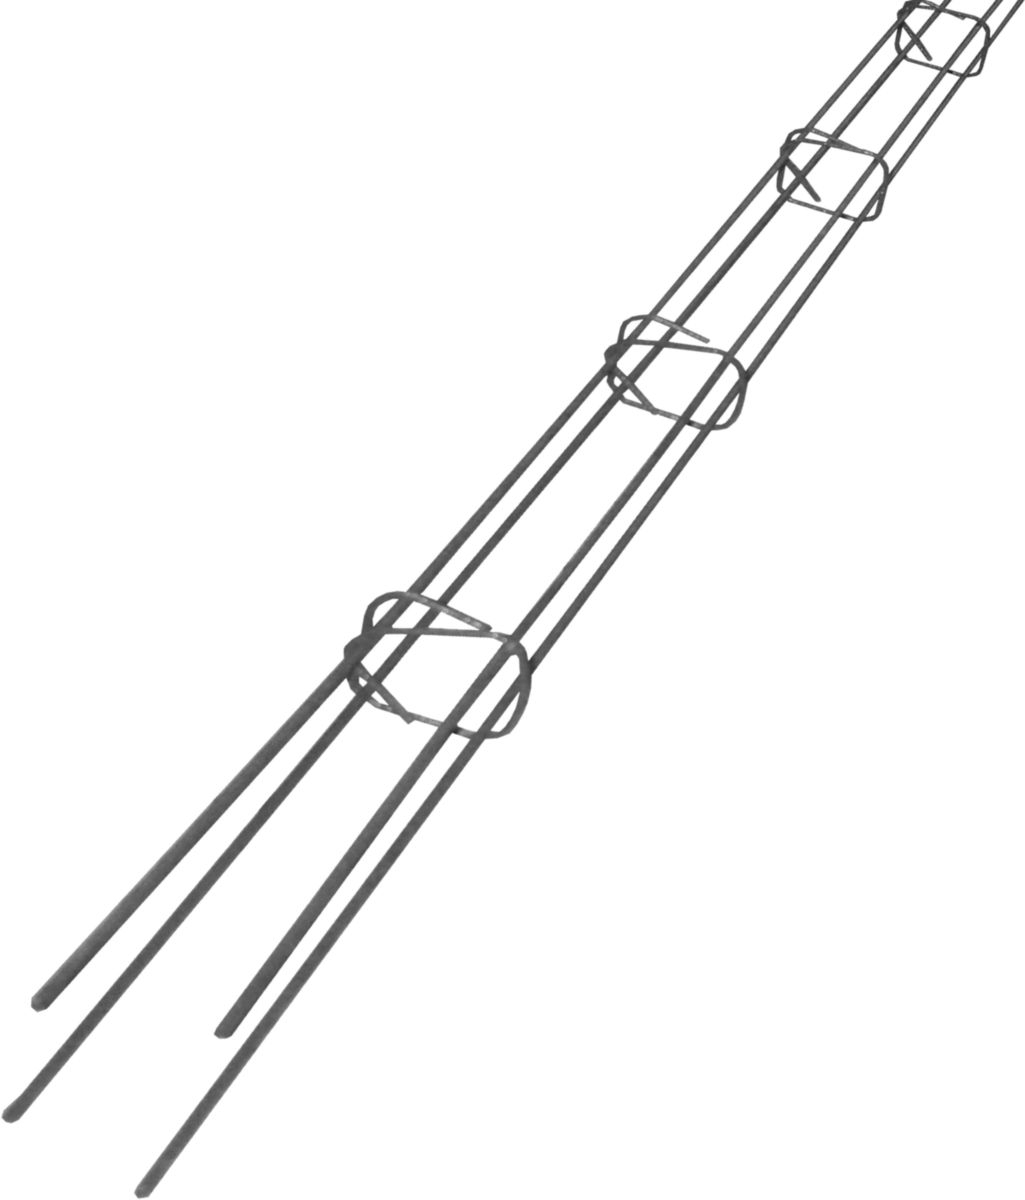 armature-chainage-elevation-4-fil-diametre-10mm-cadre-8x8-en-6ml-0